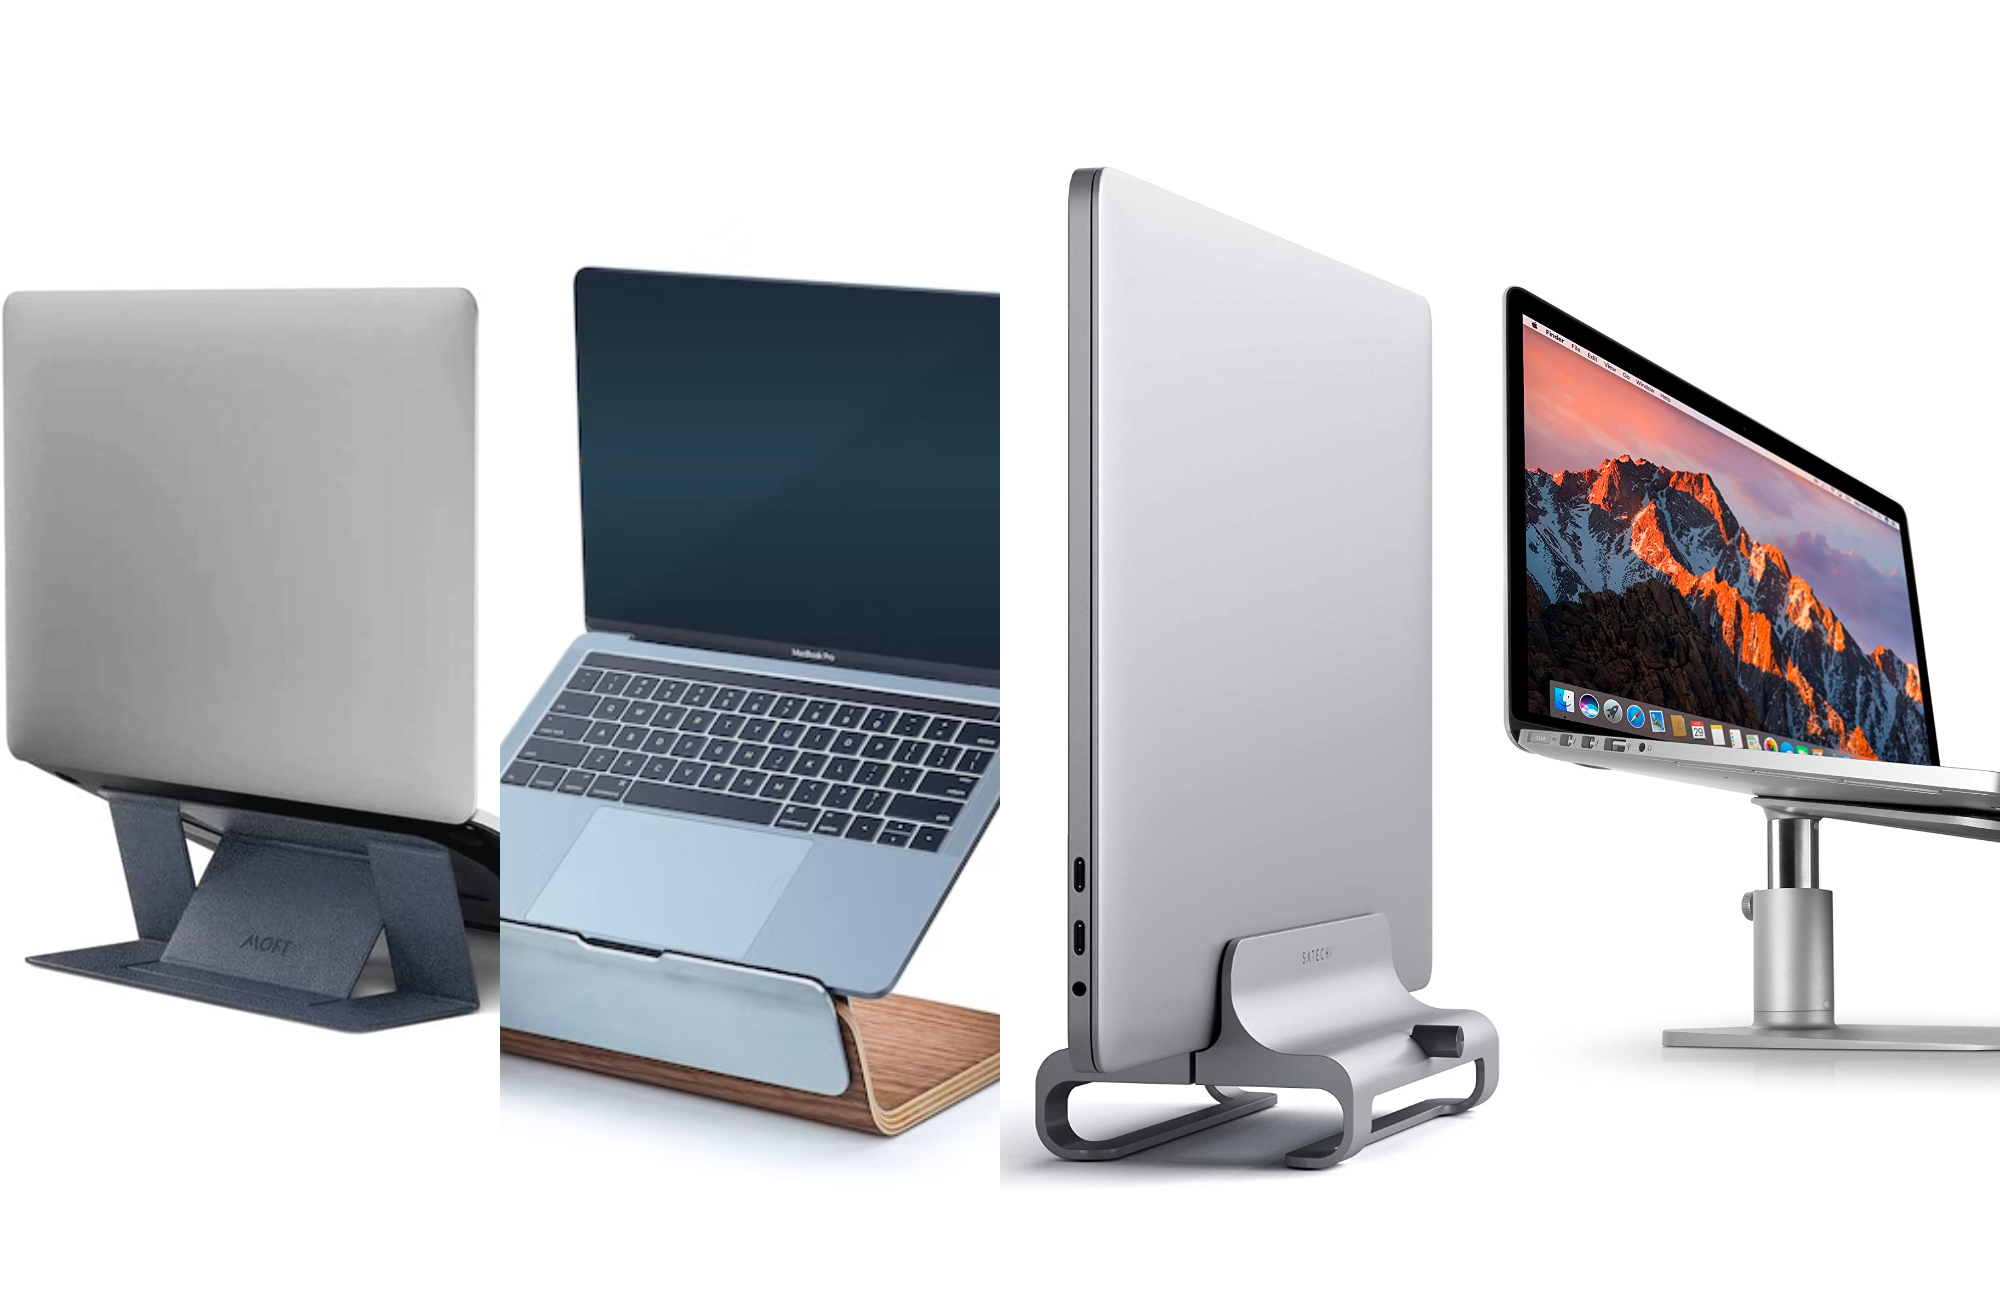 https://www.popsci.com/uploads/2021/03/15/The-Best-Laptop-Stands-In-2023.jpg?auto=webp&width=1440&height=936